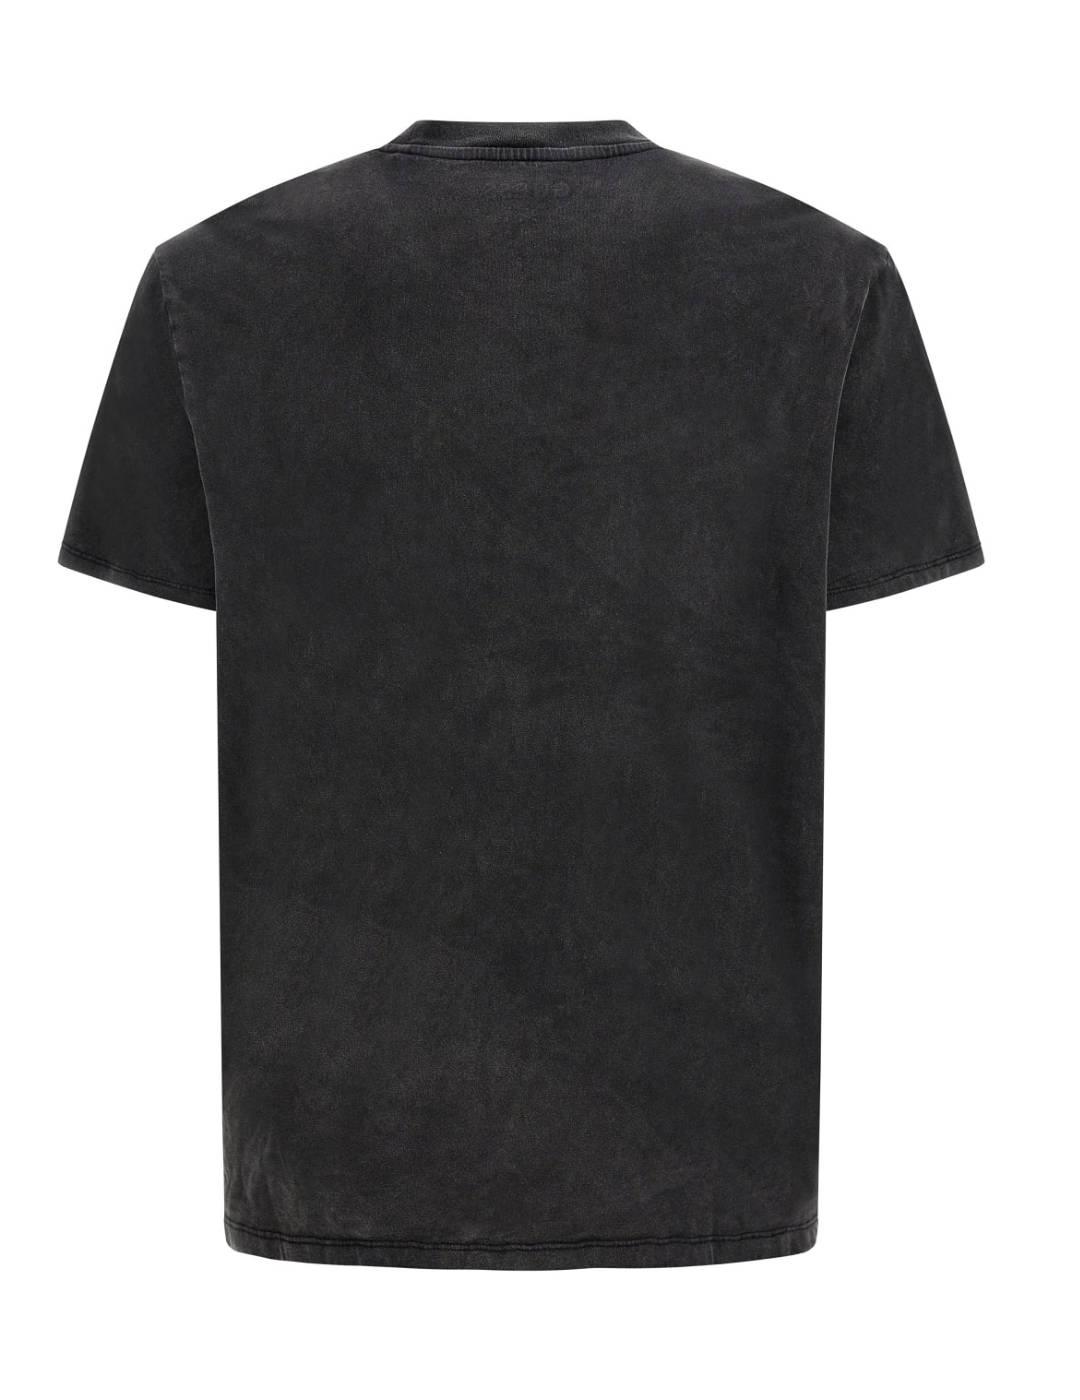 Camiseta Guess Island negro estampado multicolor para hombre